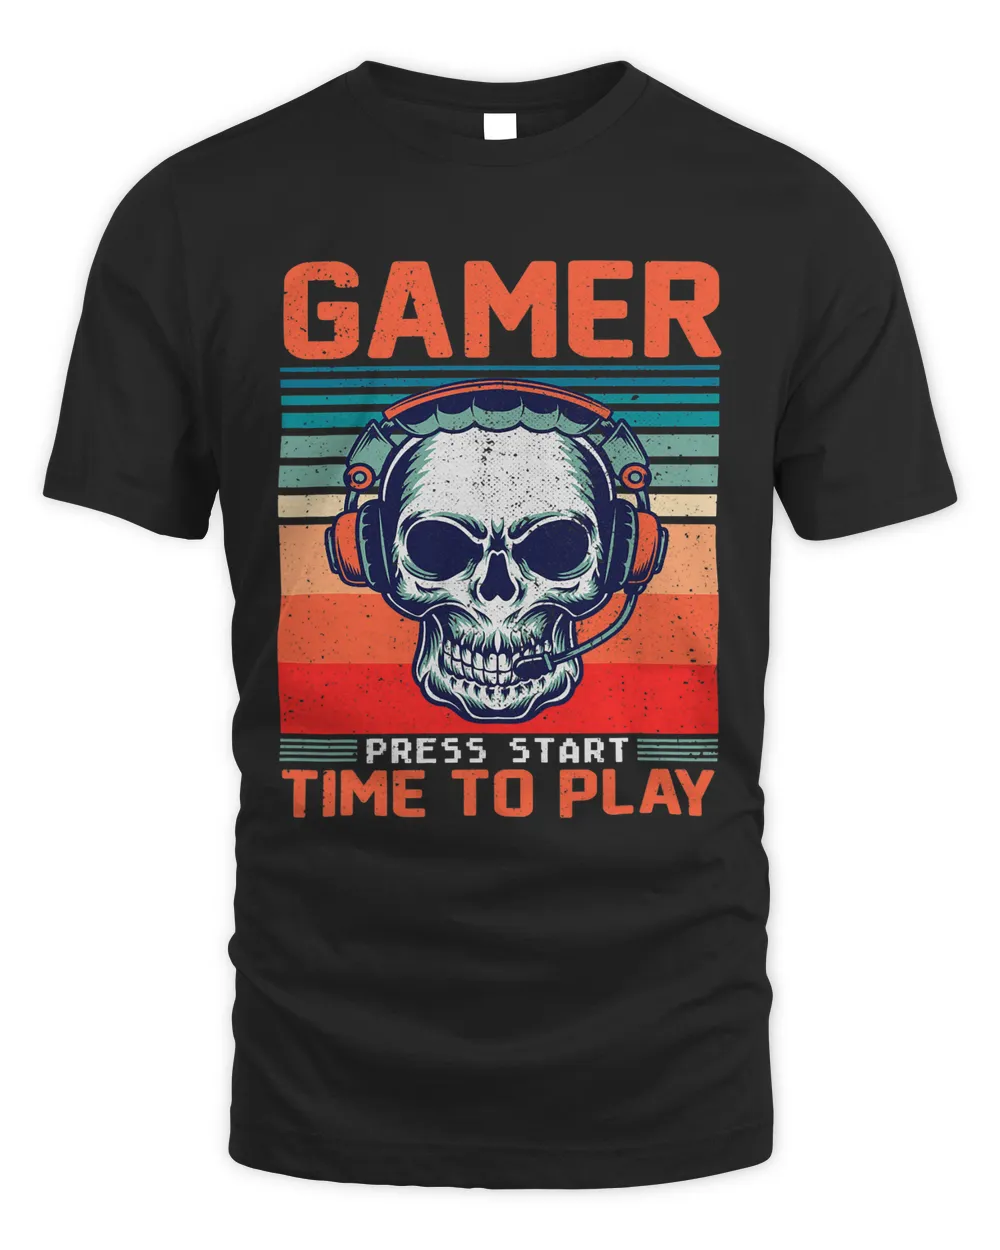 Gamer Skeleton Skull Funny Gaming Video Gamer Retro